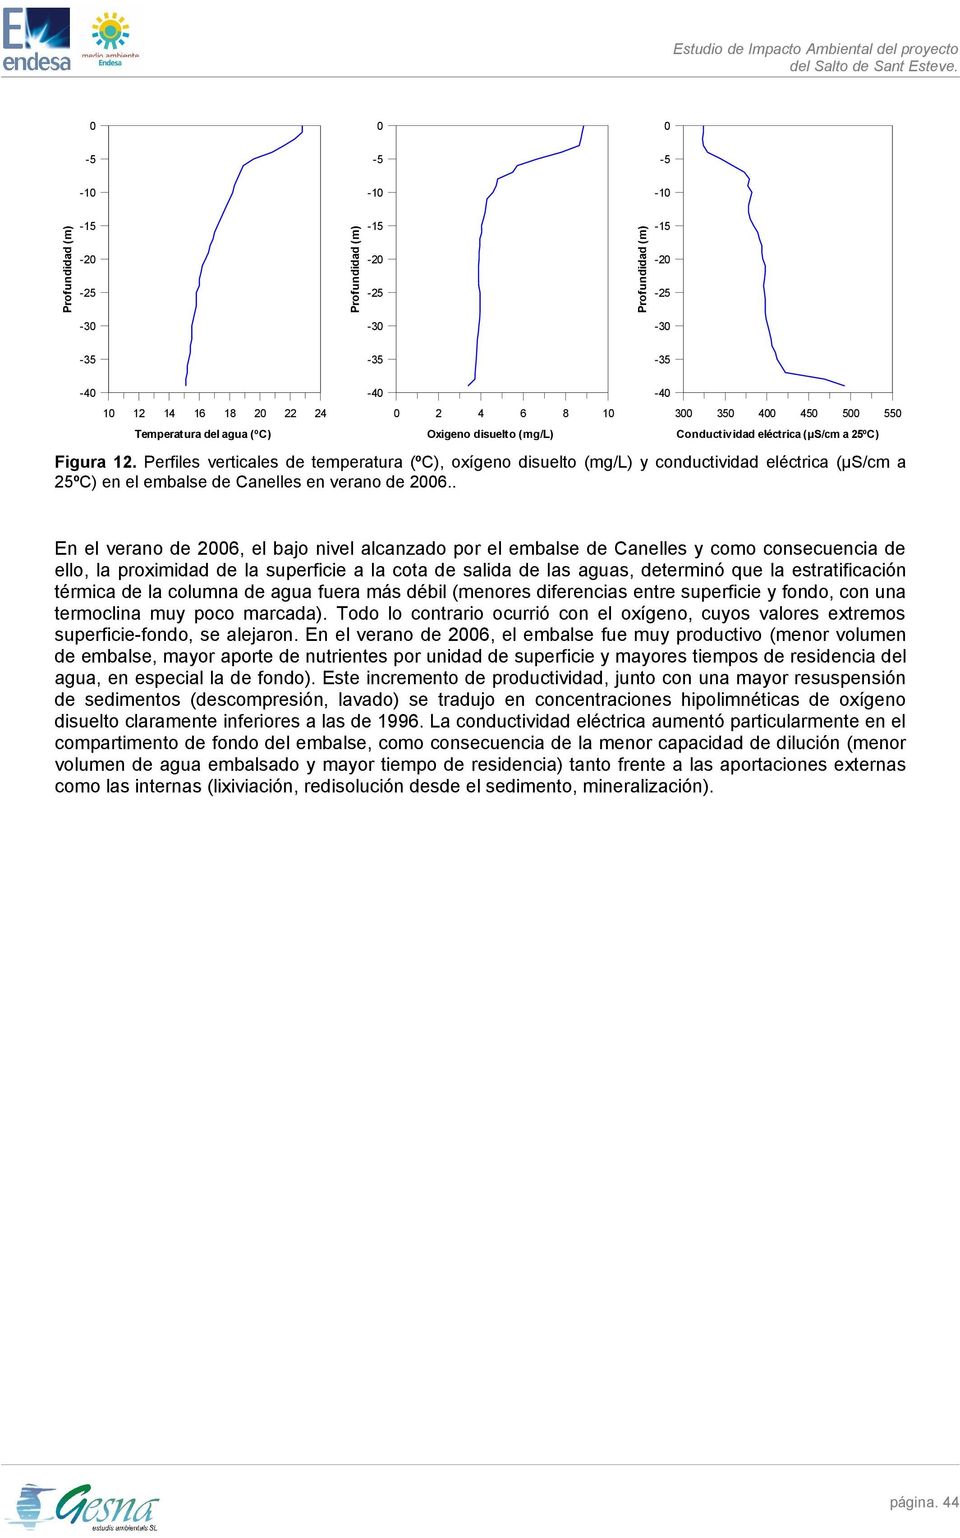 Perfiles verticales de temperatura (ºC), oxígeno disuelto (mg/l) y conductividad eléctrica (µs/cm a 25ºC) en el embalse de Canelles en verano de 2006.